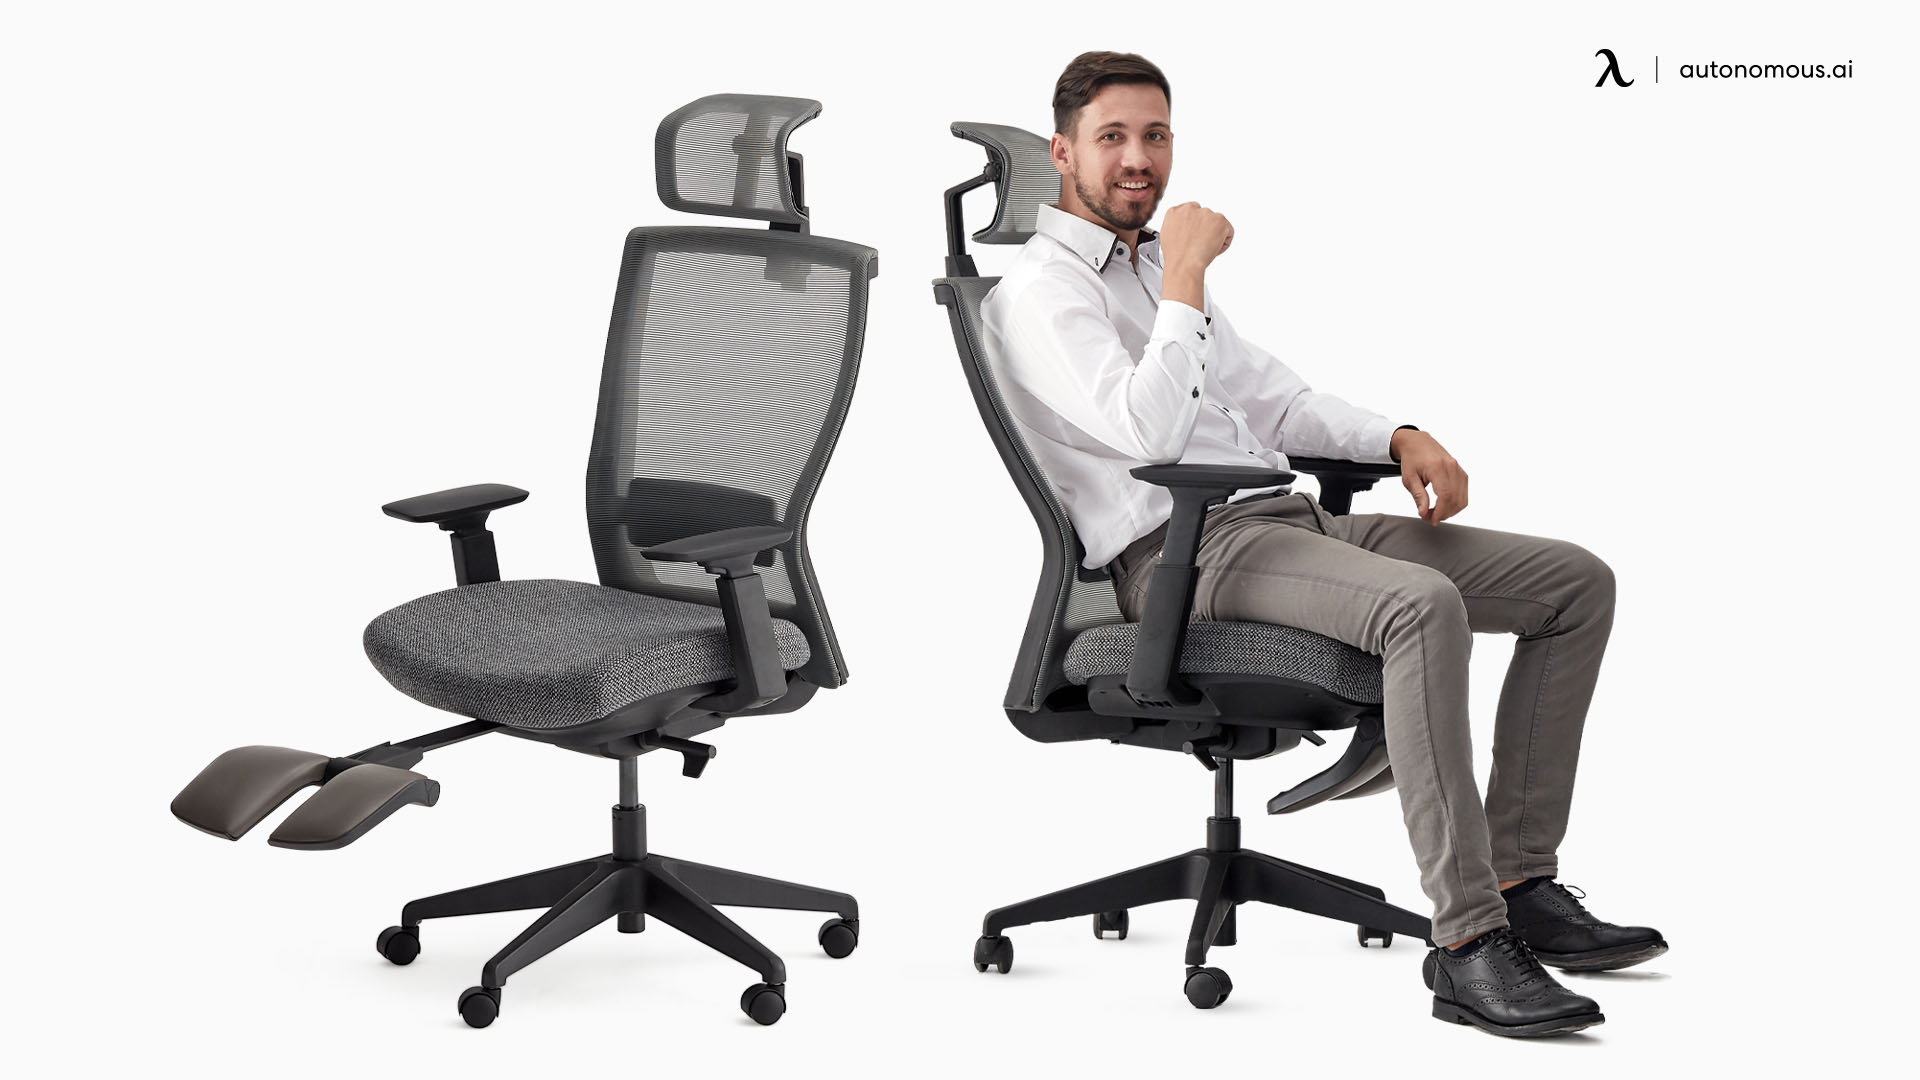 ErgoChair Recline reclining office chair